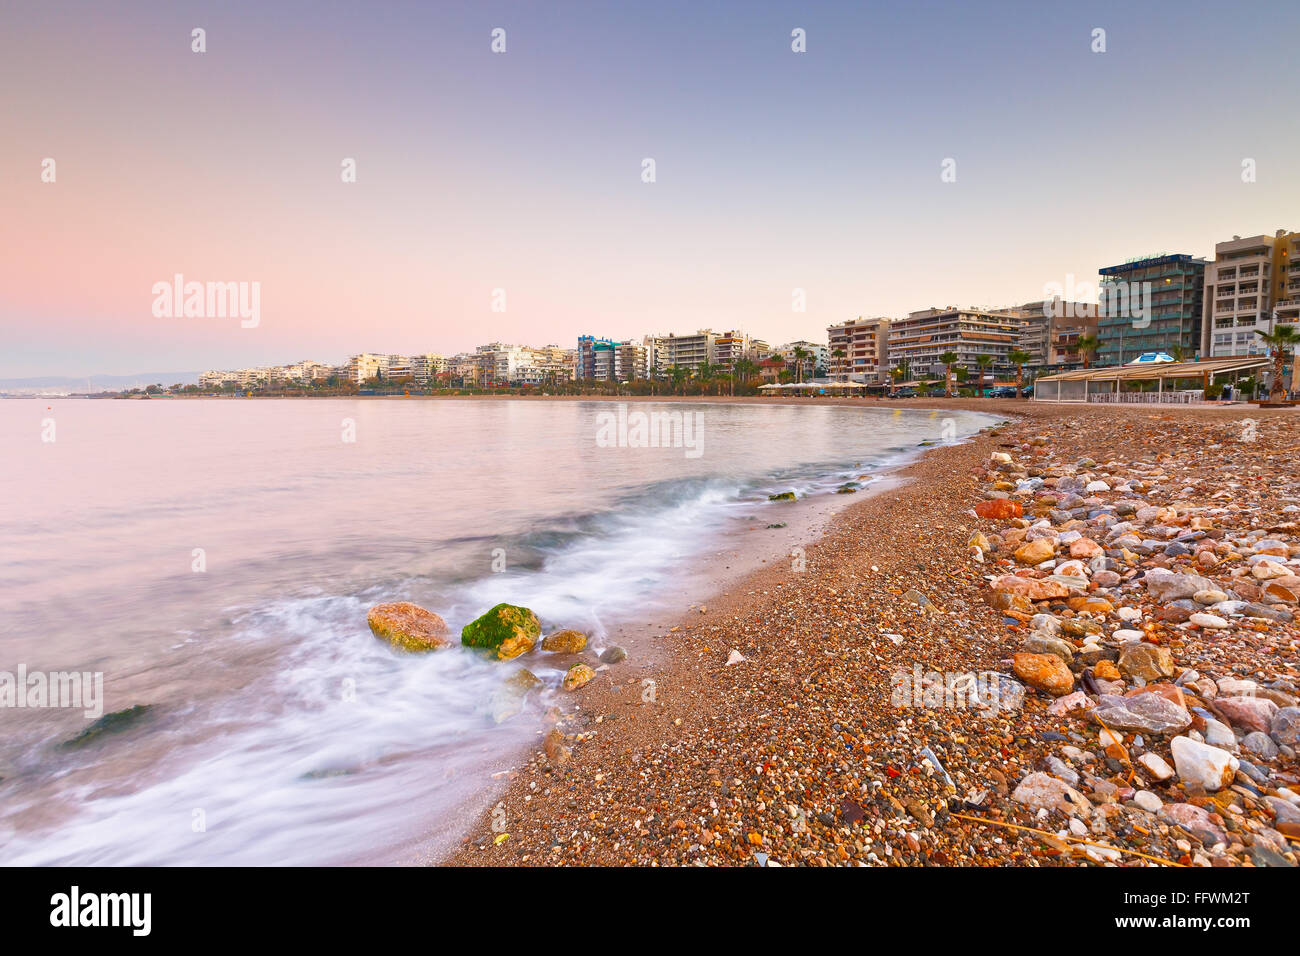 Spiaggia a Palaio Faliro e il lungomare di Atene in Grecia. Foto Stock